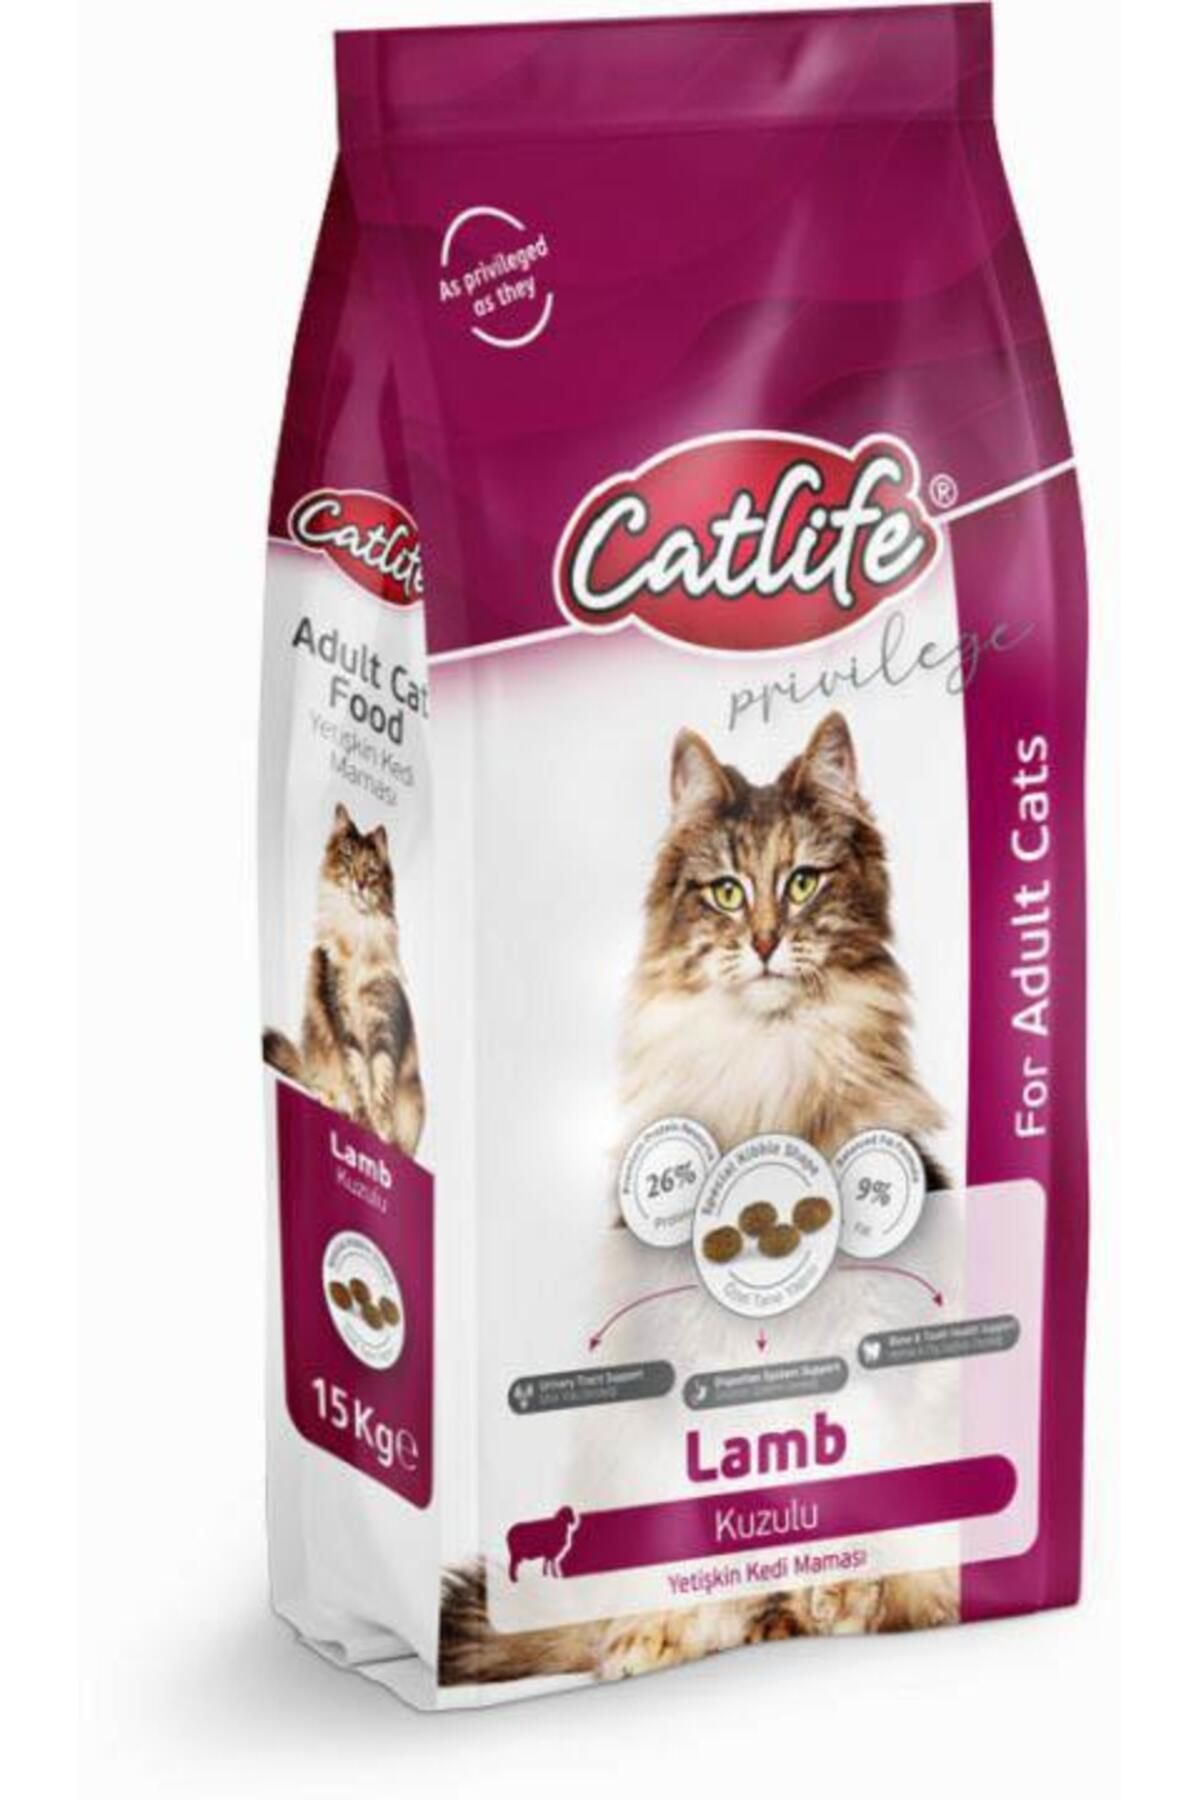 Catlife Clfd05- Kuzu Etli Yetişkin Kedi Maması 15 kg